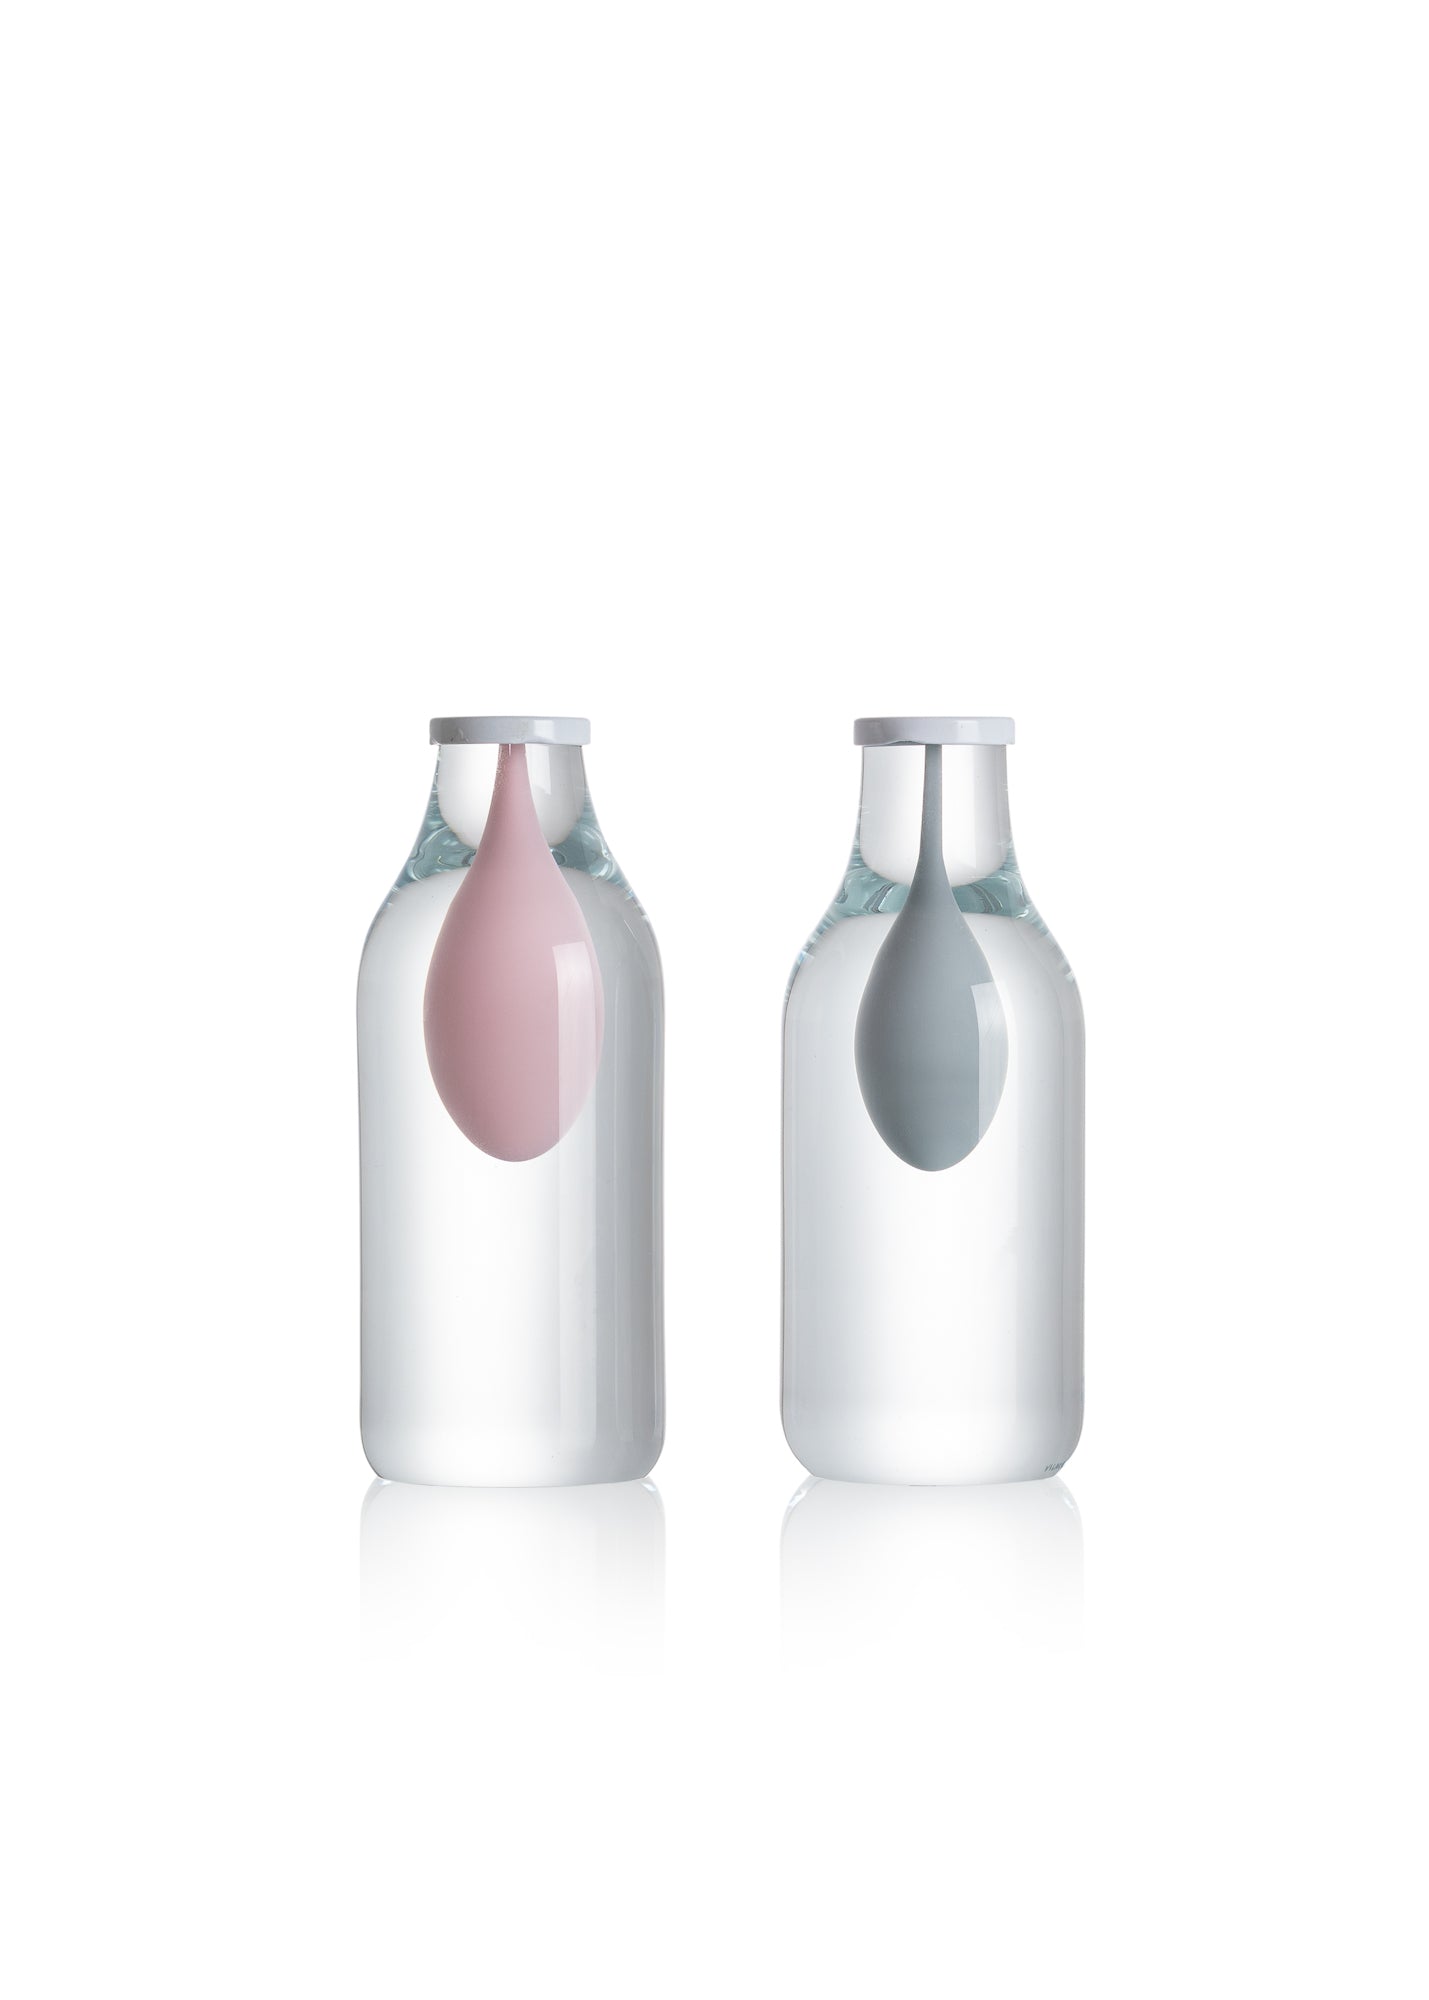 Glass bottle object